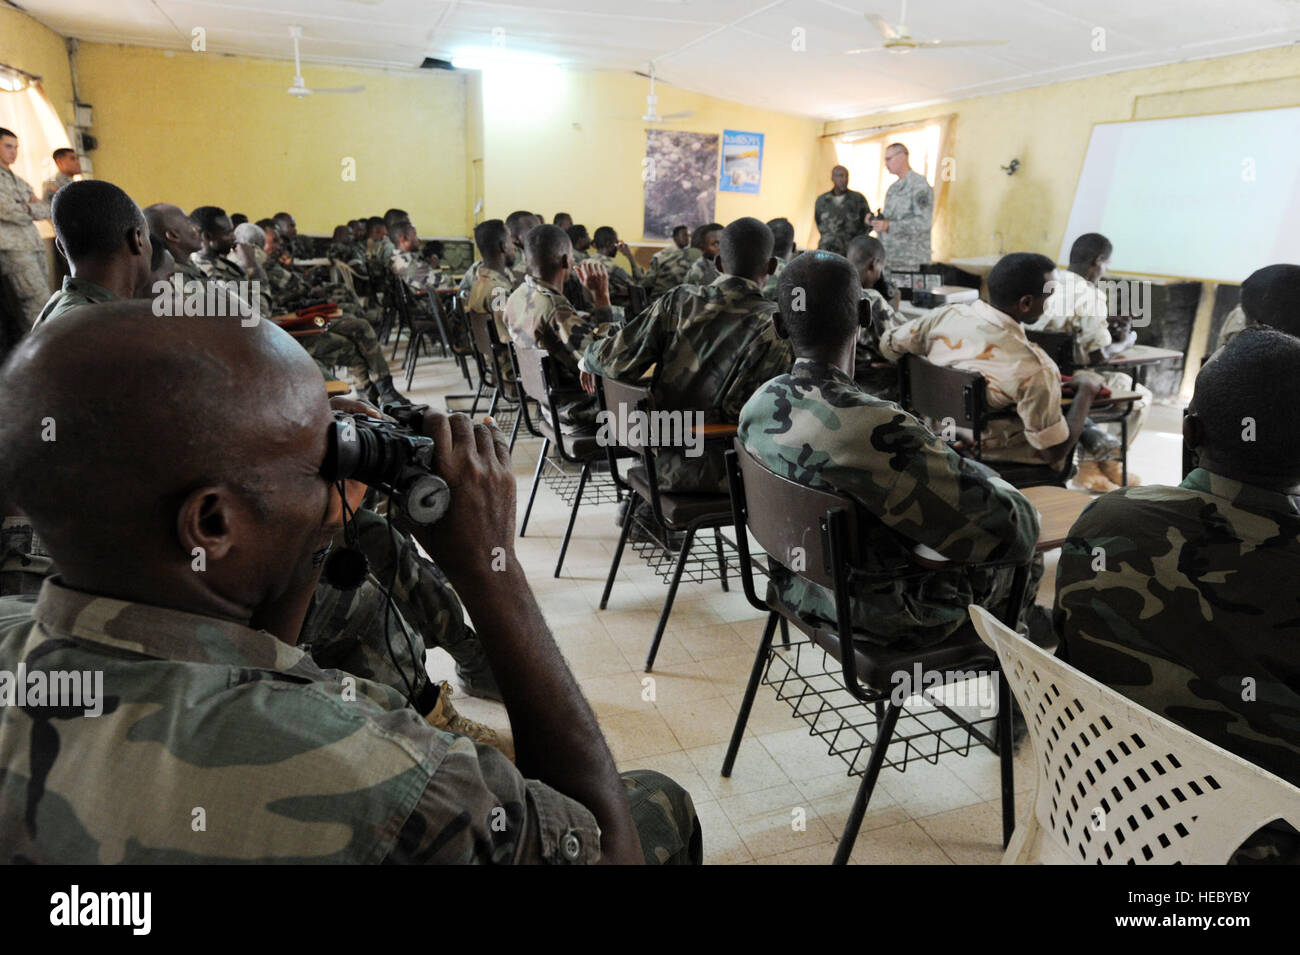 Les soldats de l'armée djiboutienne écouter lors d'une classe de vision nocturne à Arta (Djibouti), le 23 mars 2012. L'ARMÉE AMÉRICAINE 3e Escadron, 124e régiment de cavalerie, déployées à l'appui de la Force opérationnelle interarmées - Corne de l'Afrique (CJTF-HOA), contribue à former les soldats de l'armée djiboutienne pour un prochain déploiement en Somalie. Banque D'Images